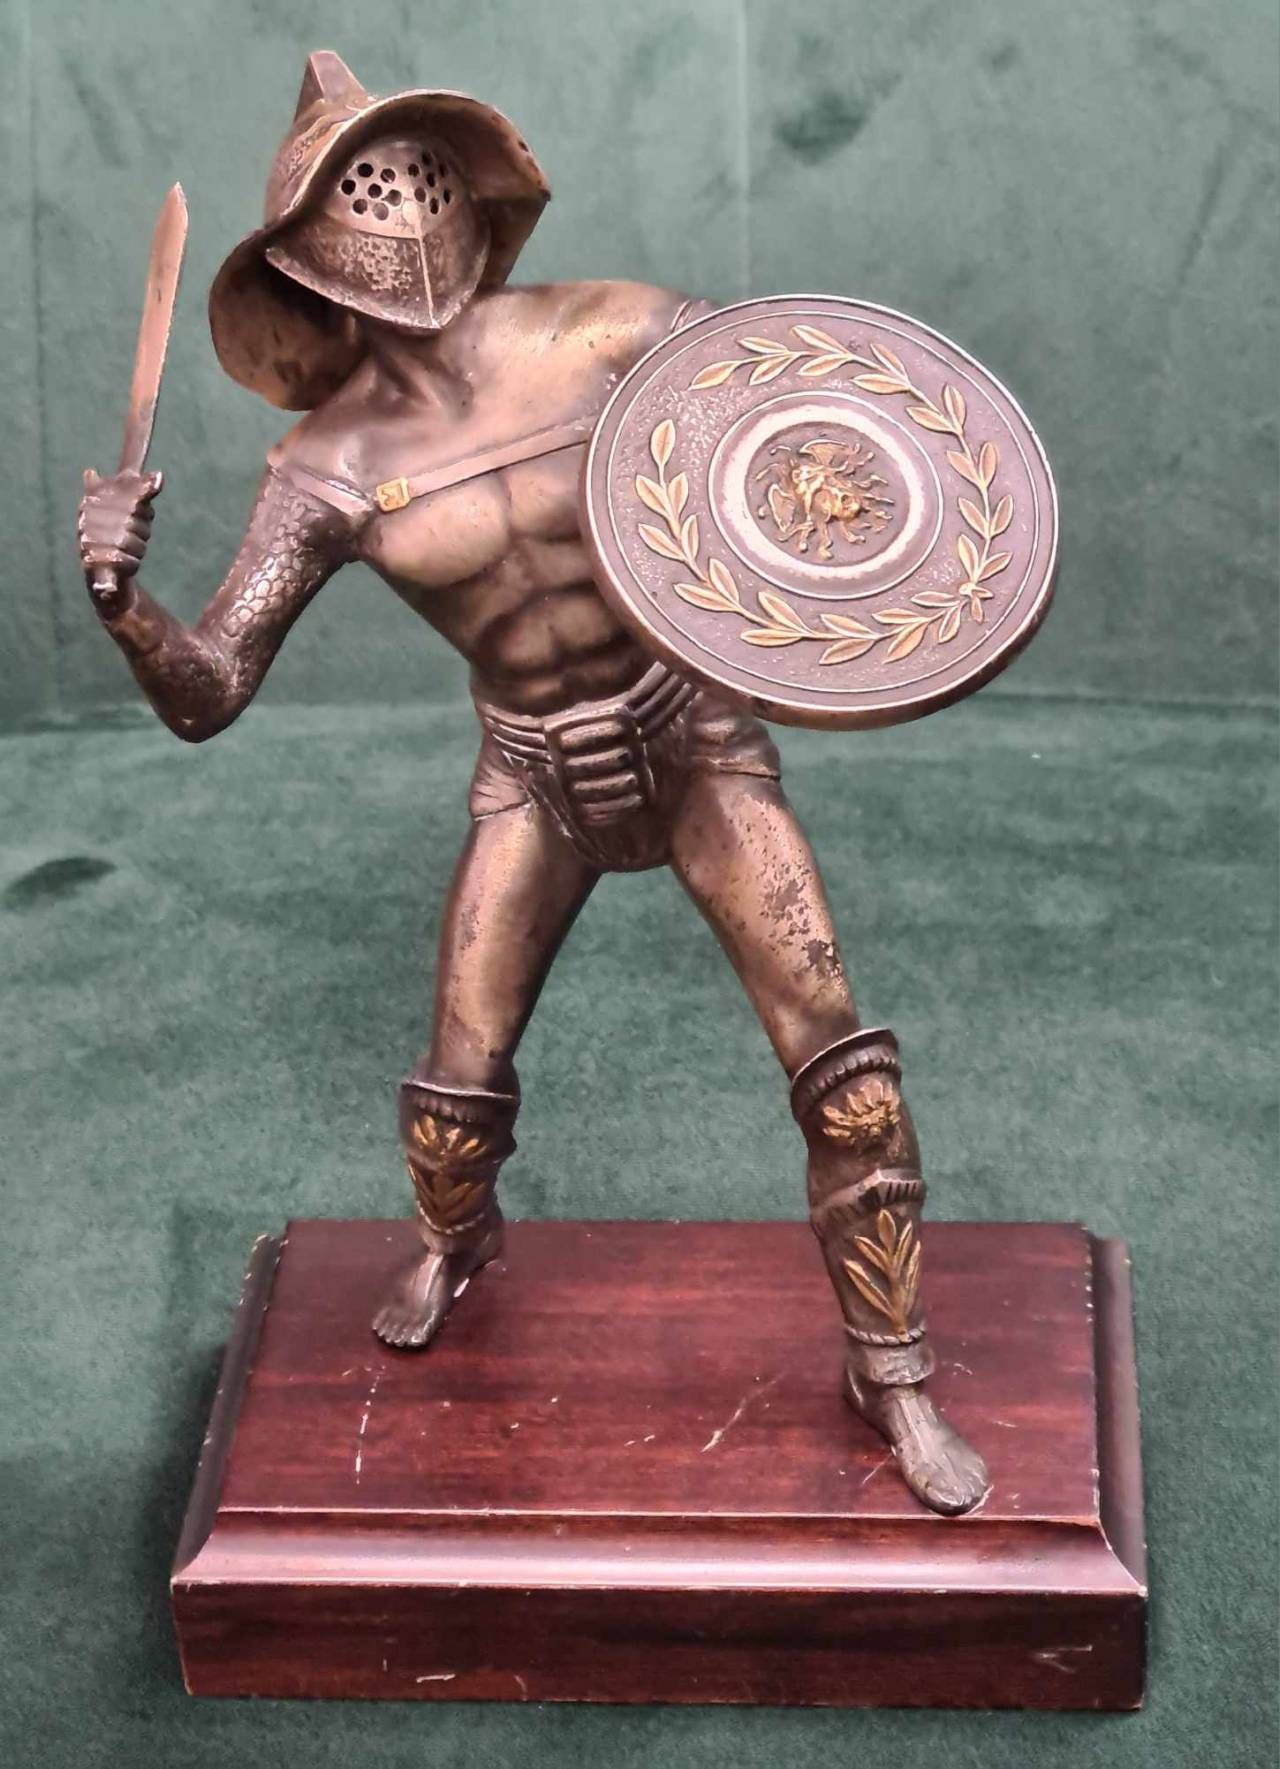 Gladiator din argint 800, pe soclu din lemn